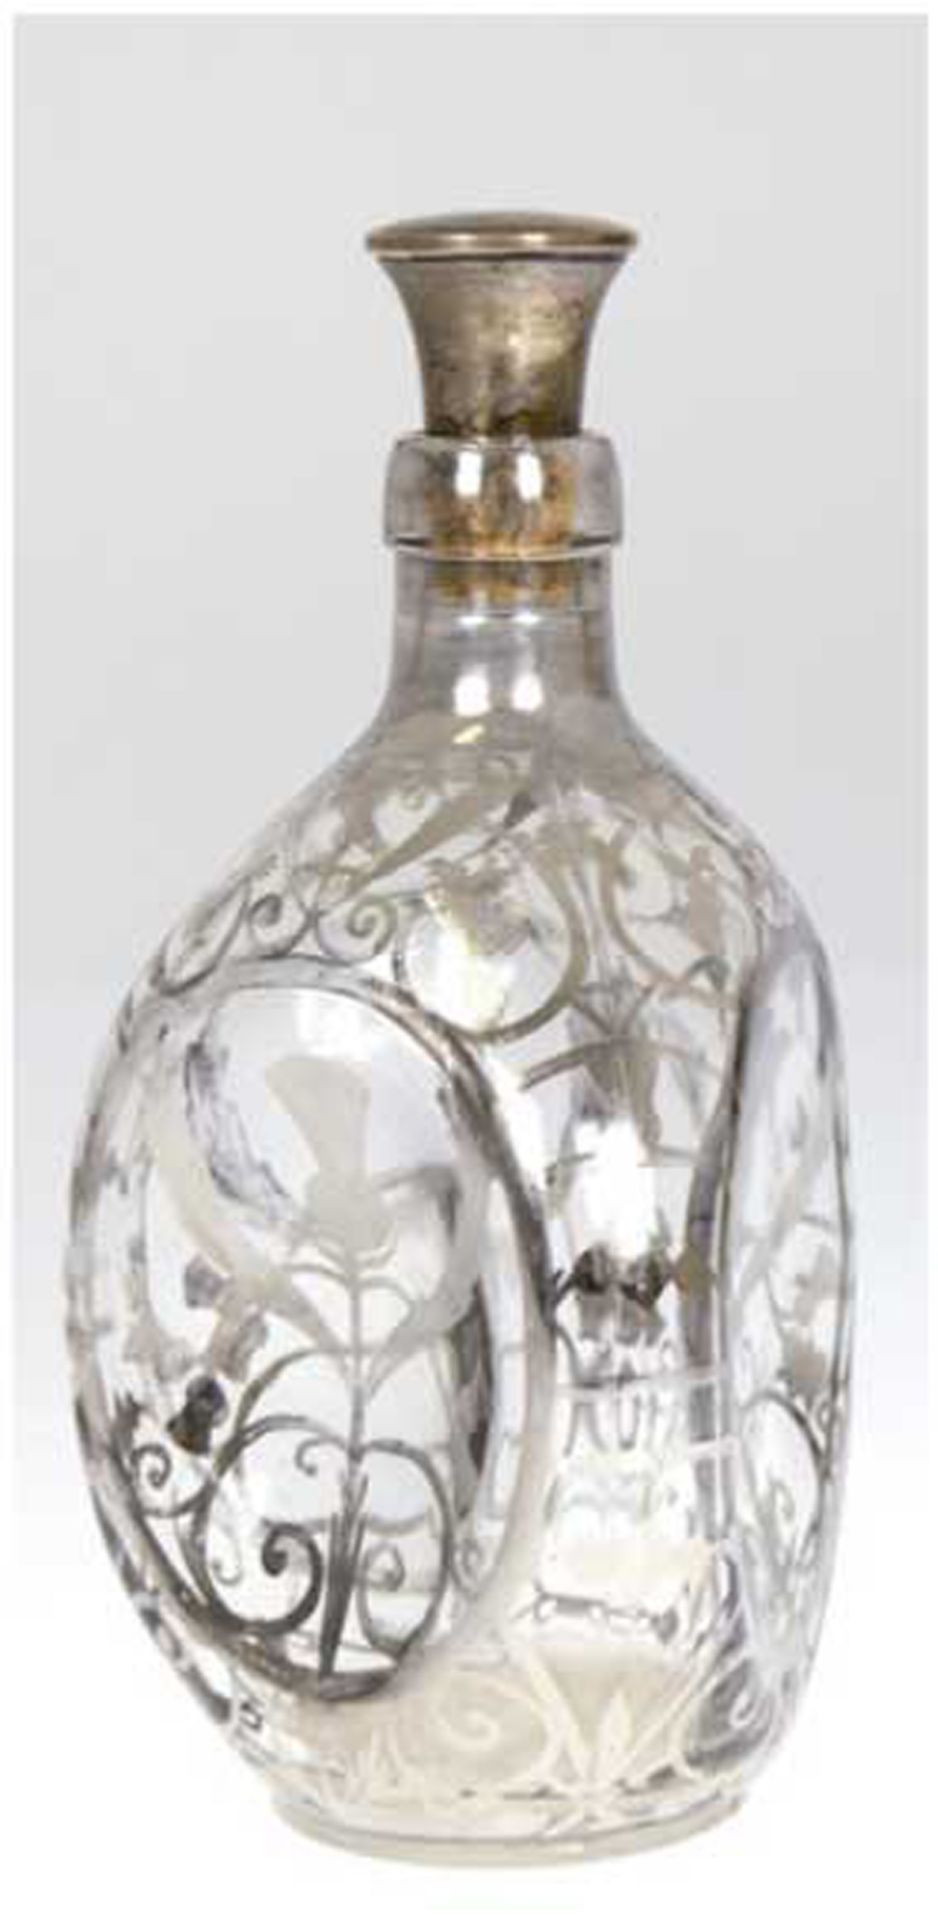 HAIG-Whiskyflasche mit Silberdekor und Silber-Stopfen, dreipassiger, gedrückter Korpus mit floralem